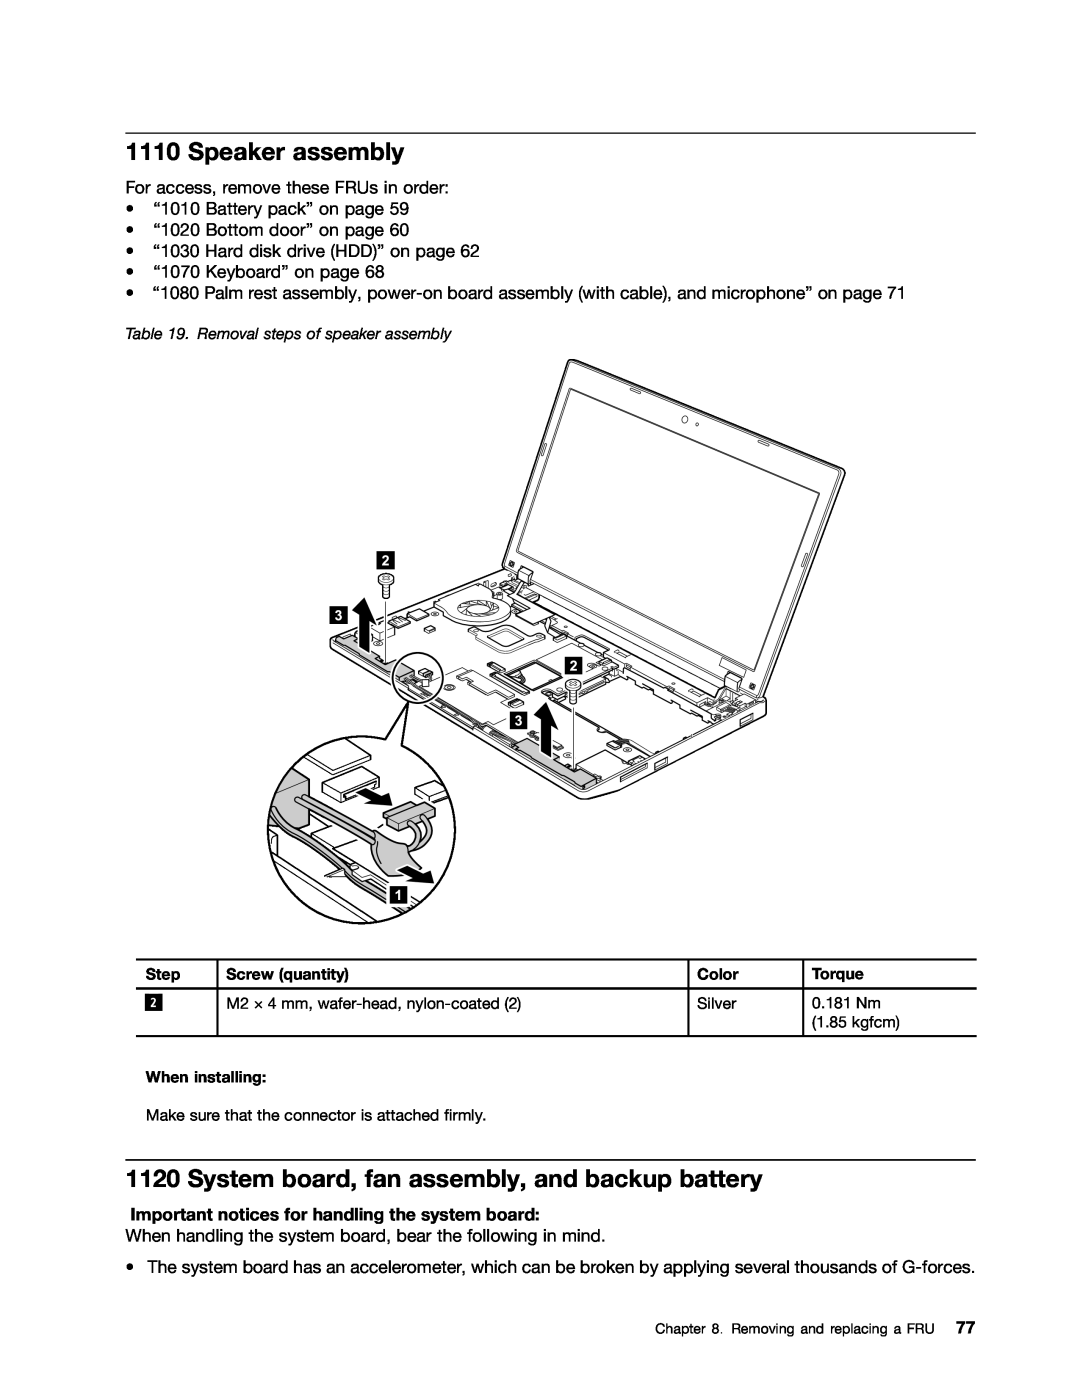 Lenovo E10 manual Speaker assembly, System board, fan assembly, and backup battery 